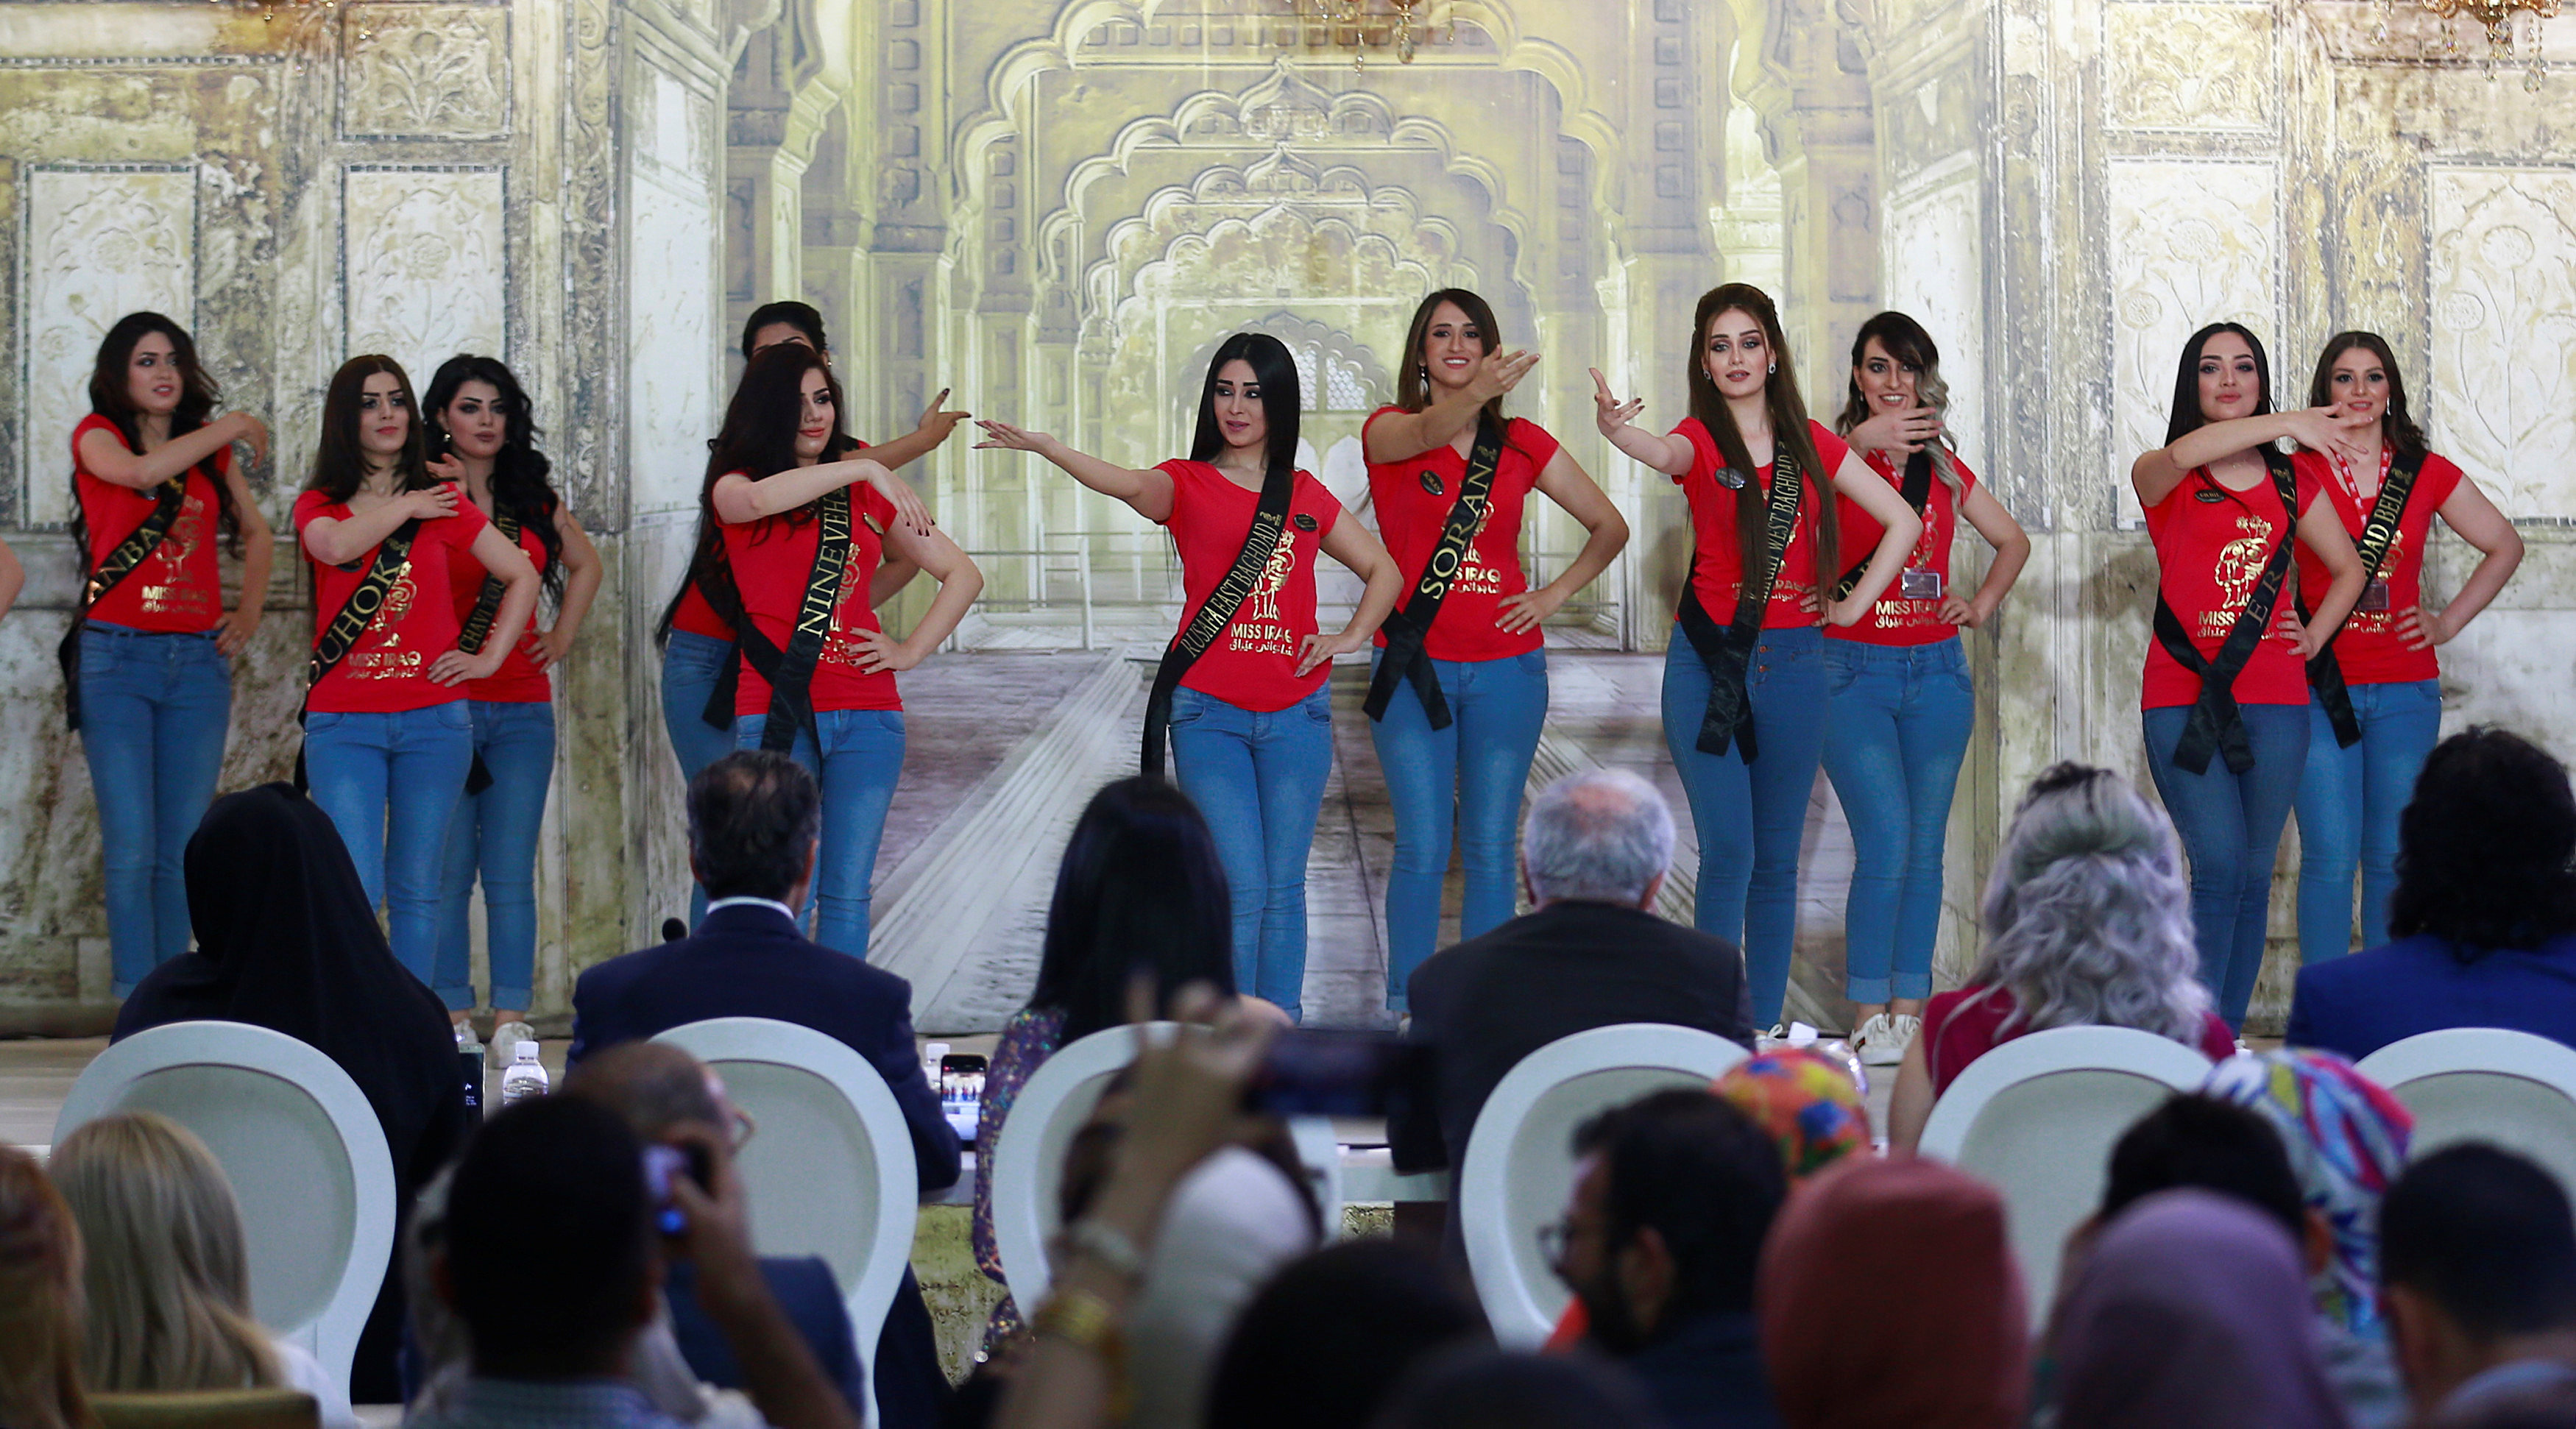 المشاركات فى حفل اختيار ملكة جمال العراق 2017